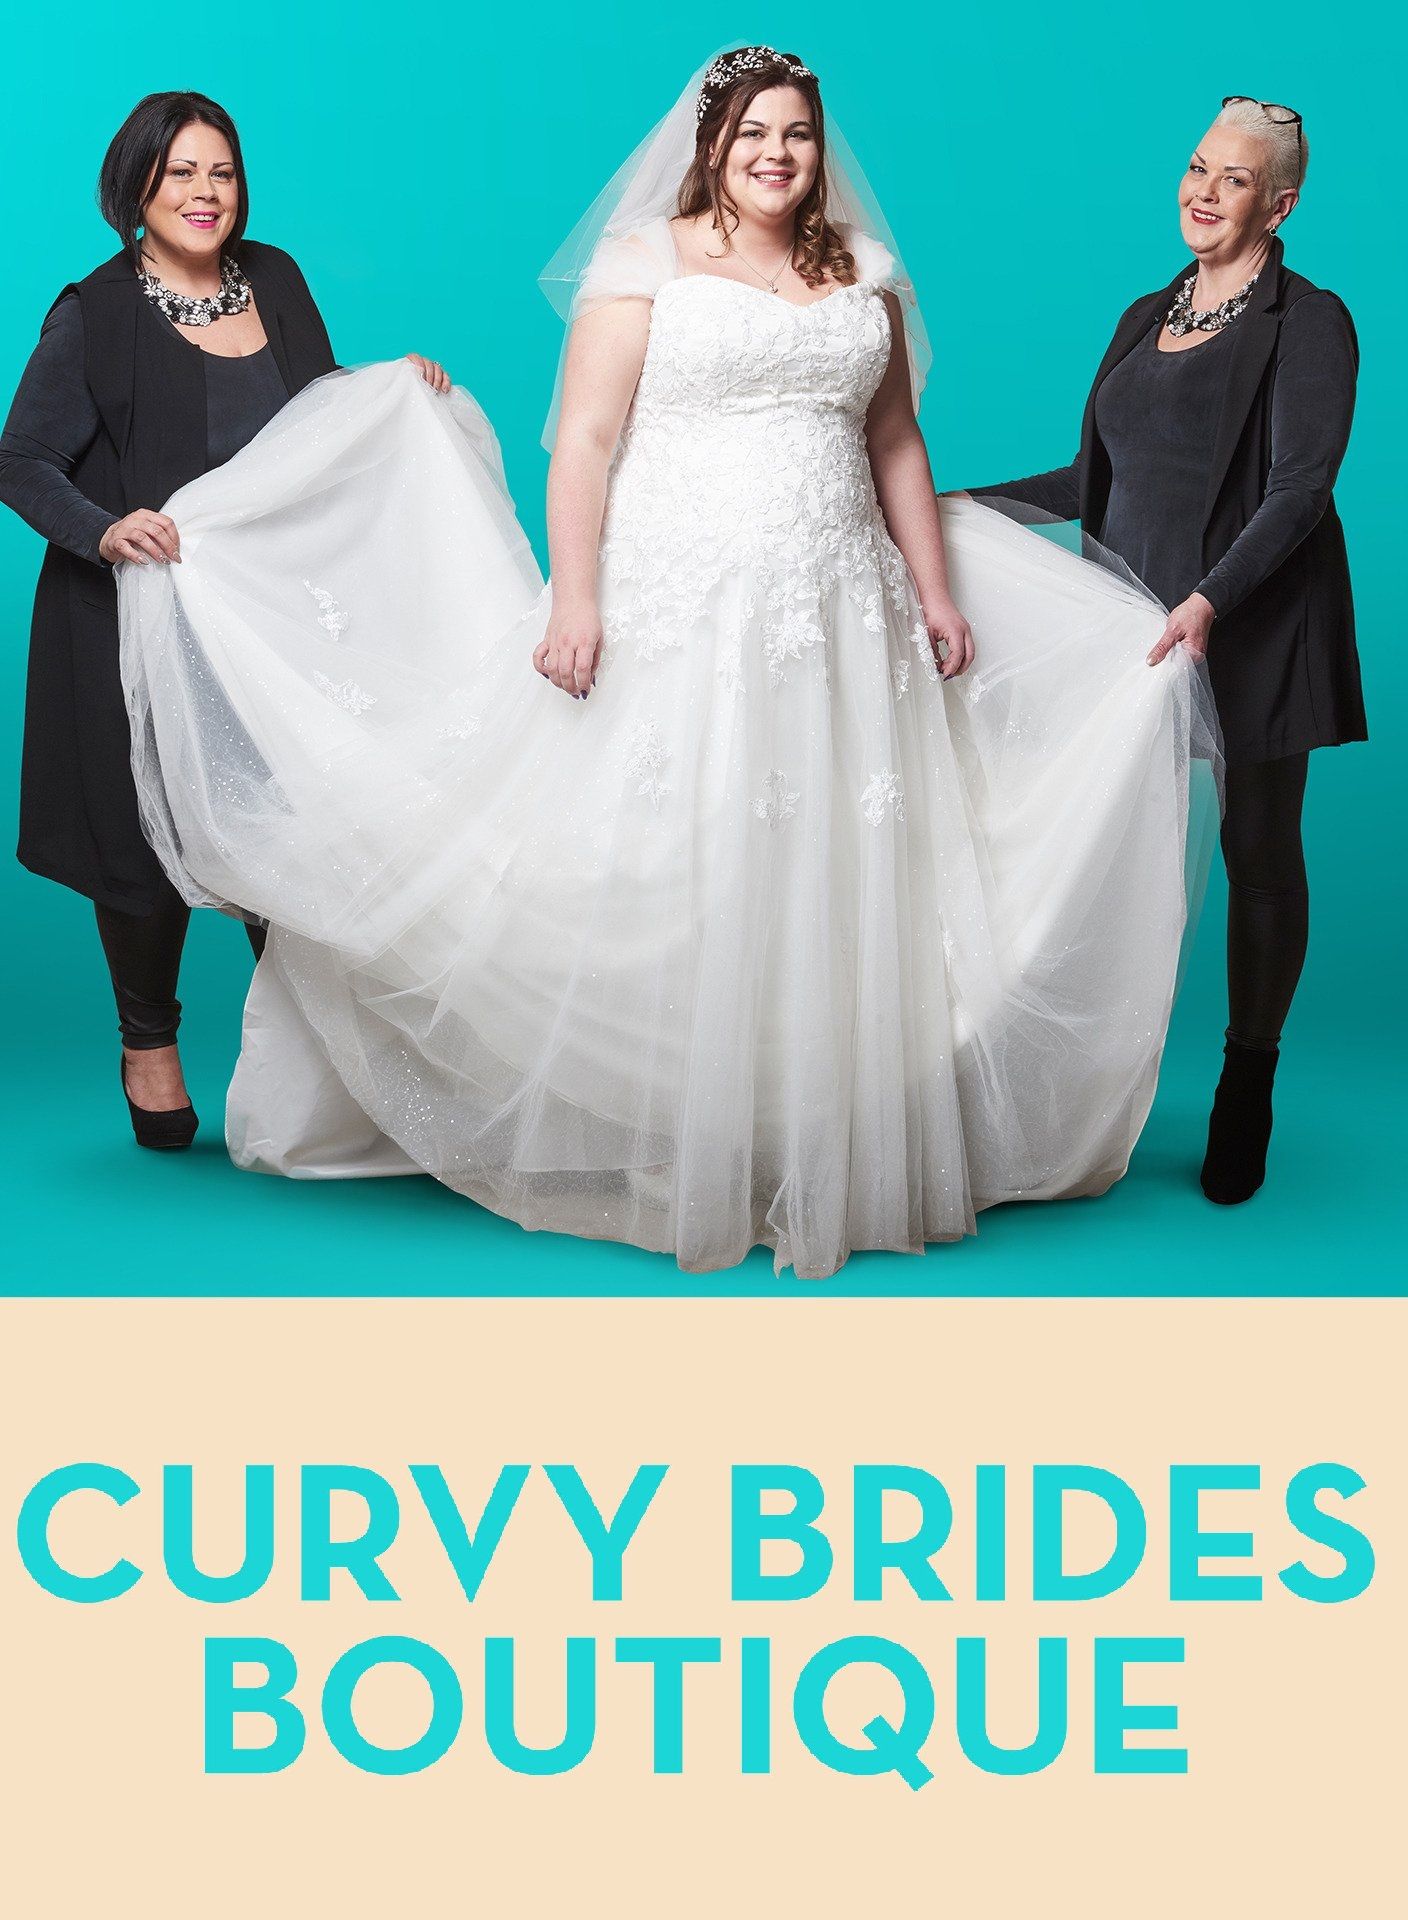 curvy brides boutique website